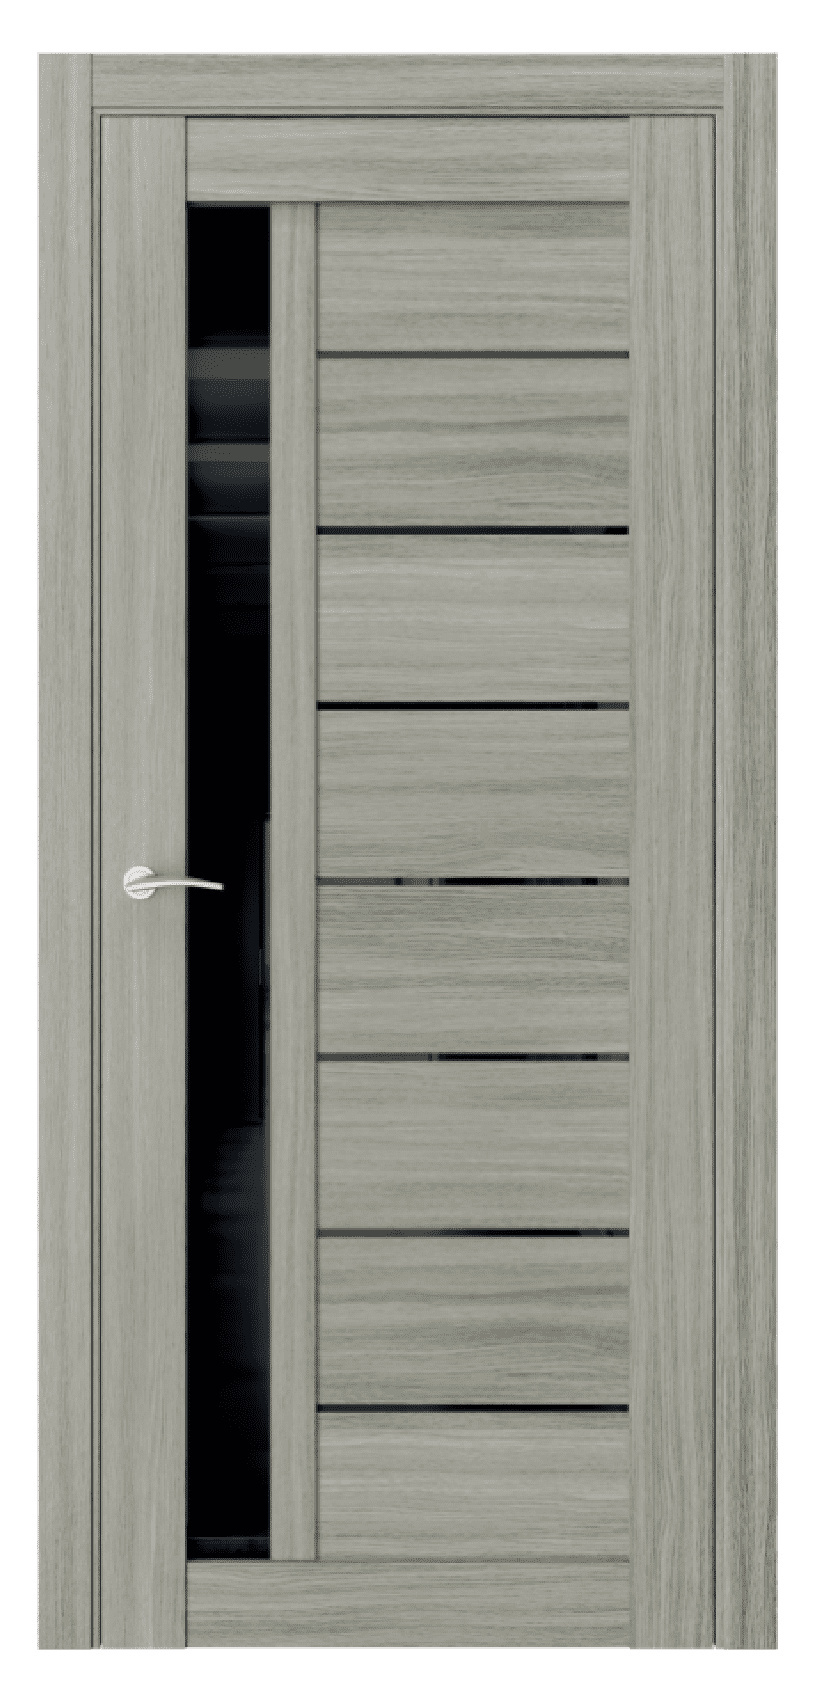 Questdoors Межкомнатная дверь Q37, арт. 17473 - фото №1